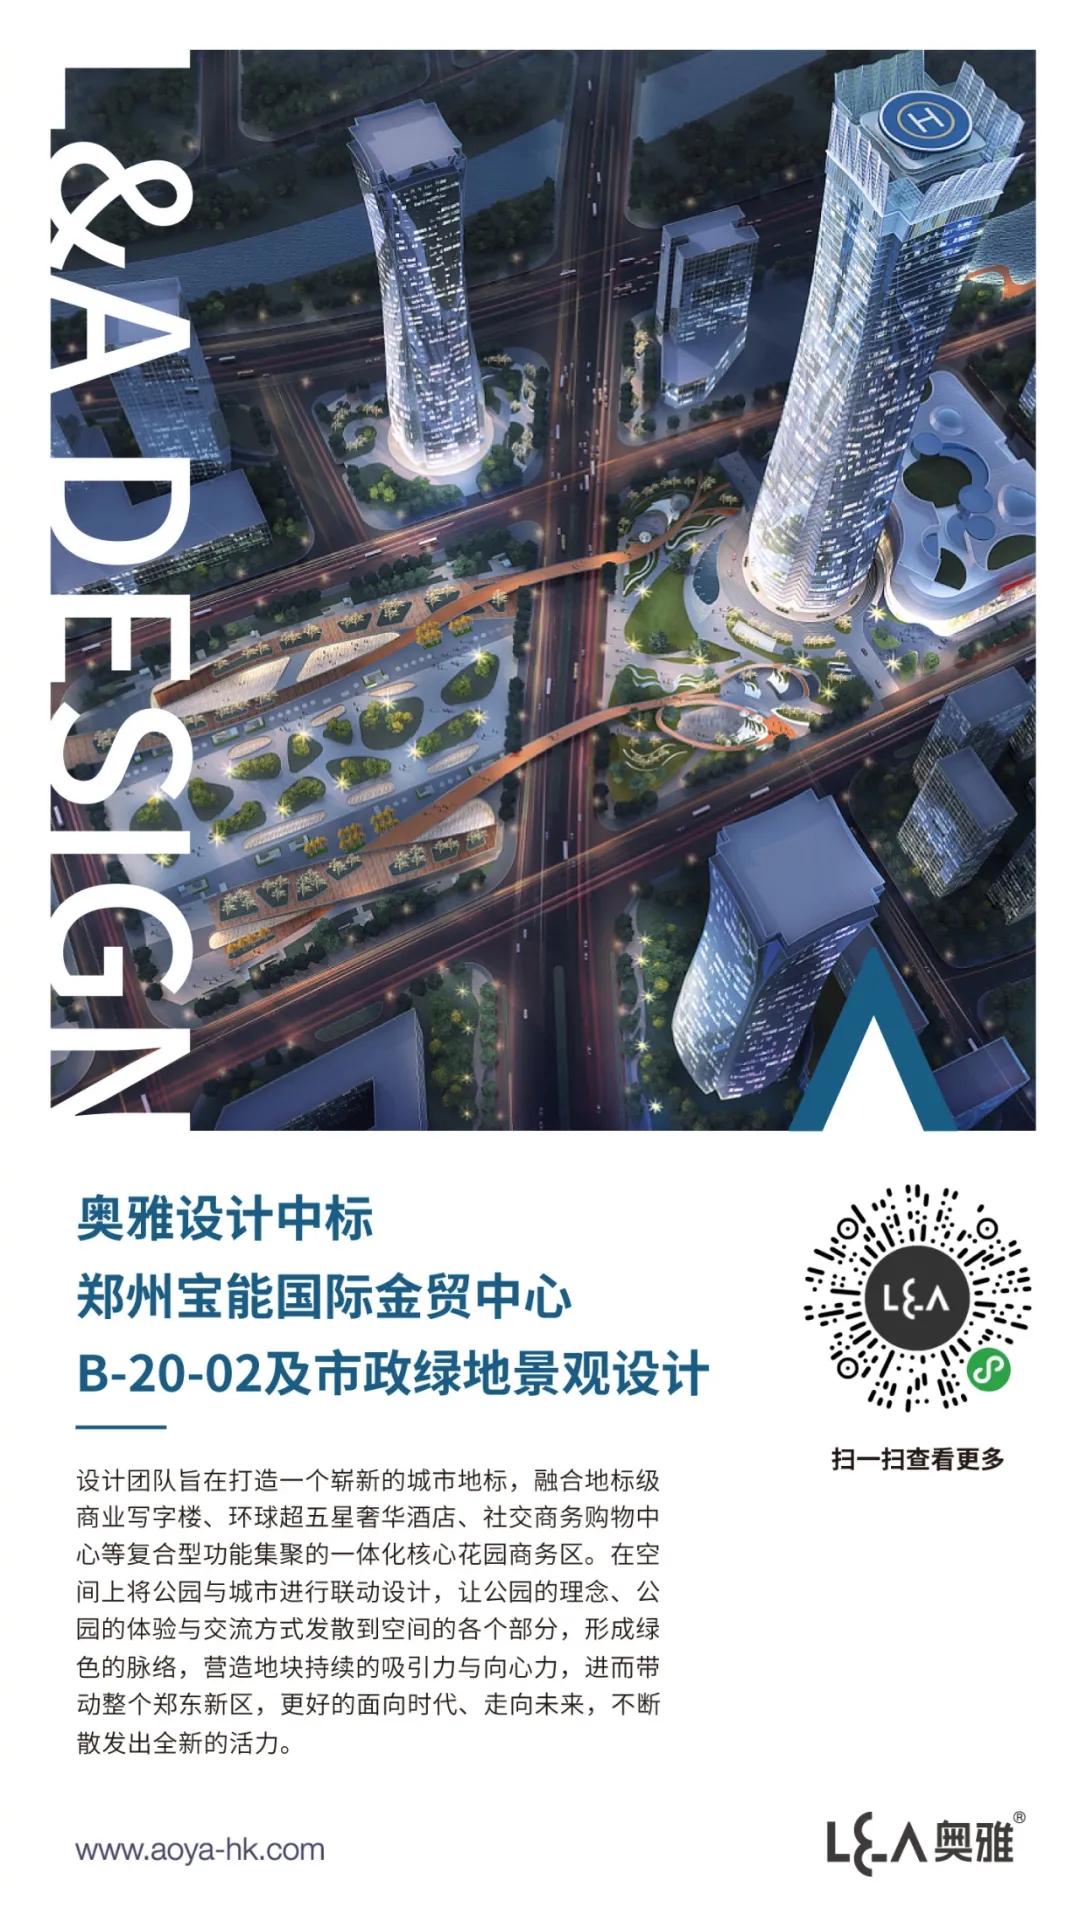 奥雅设计中标郑州宝能国际金贸中心项目 | 喜讯